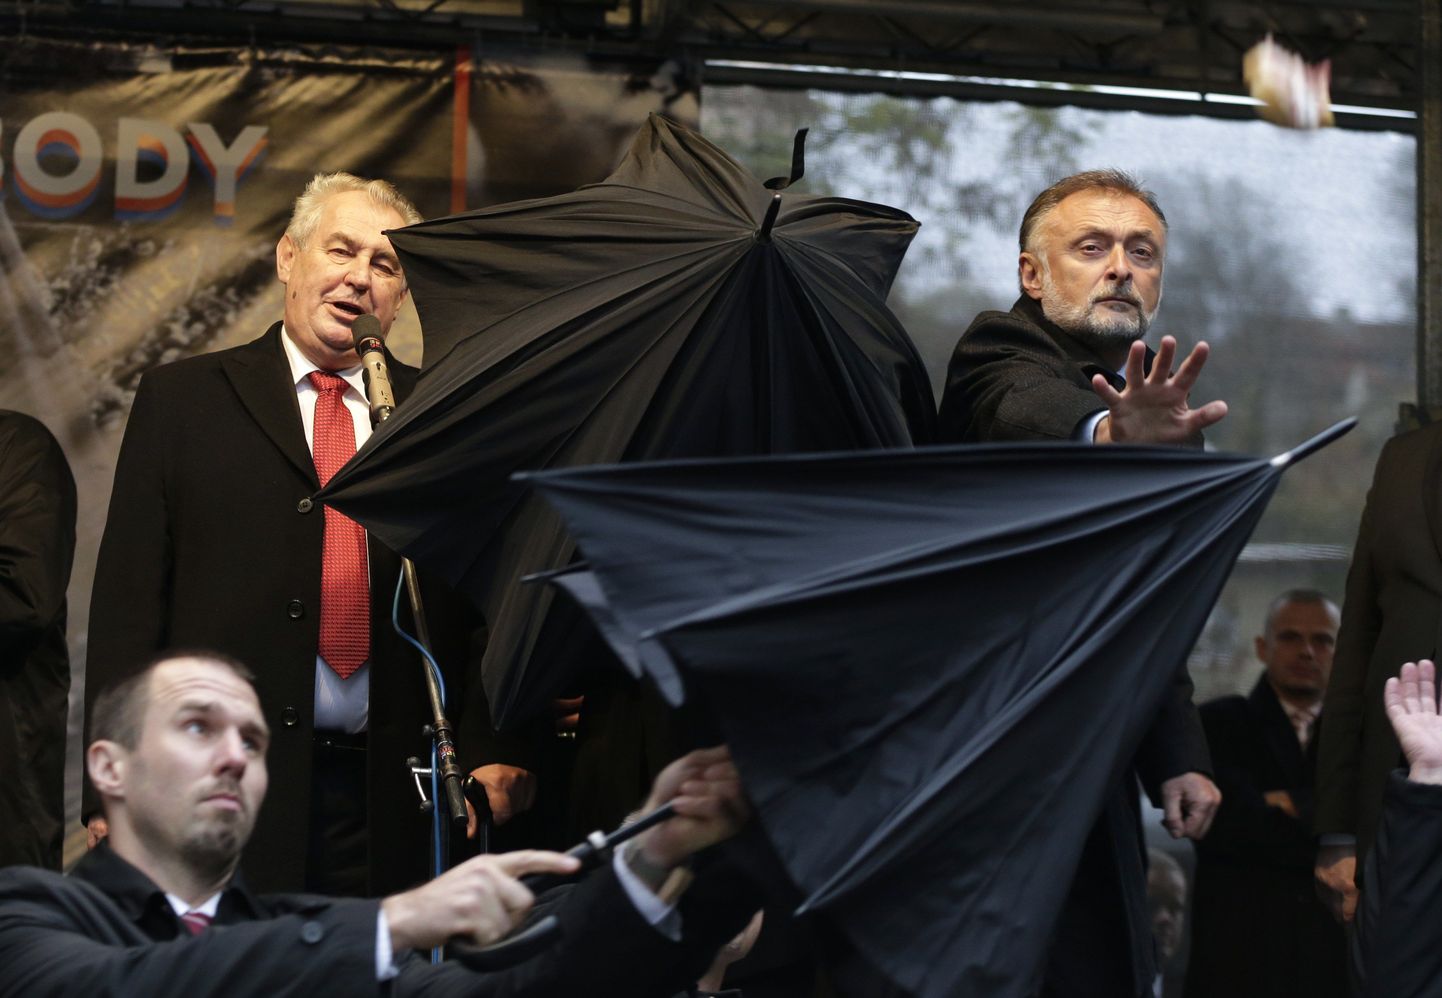 Участники акции протеста в Праге в попытке забросать яйцами и помидорами президента Чехии Милоша Земана попали в его немецкого коллегу Йоахима Гаука.